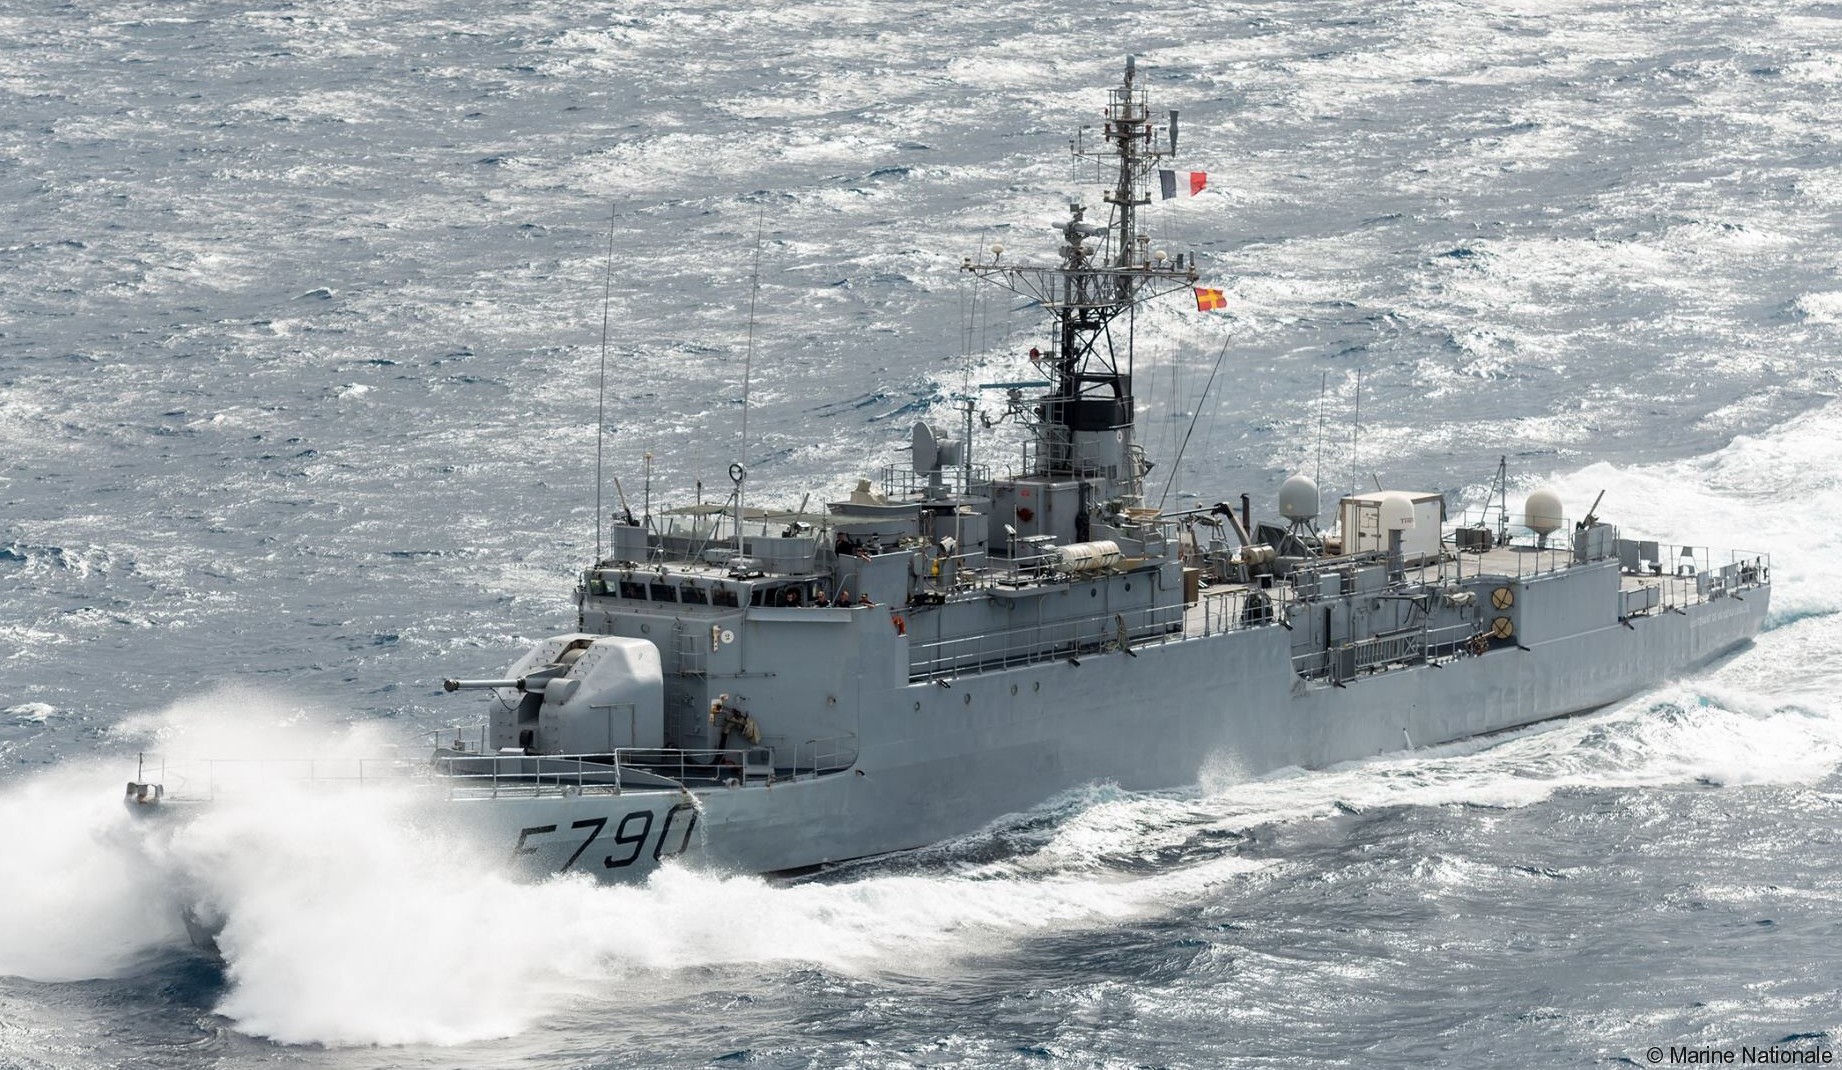 f-790 fs lieutenant de vaisseau lavallee d'estienne d'orves class corvette type a69 aviso french navy marine nationale 02